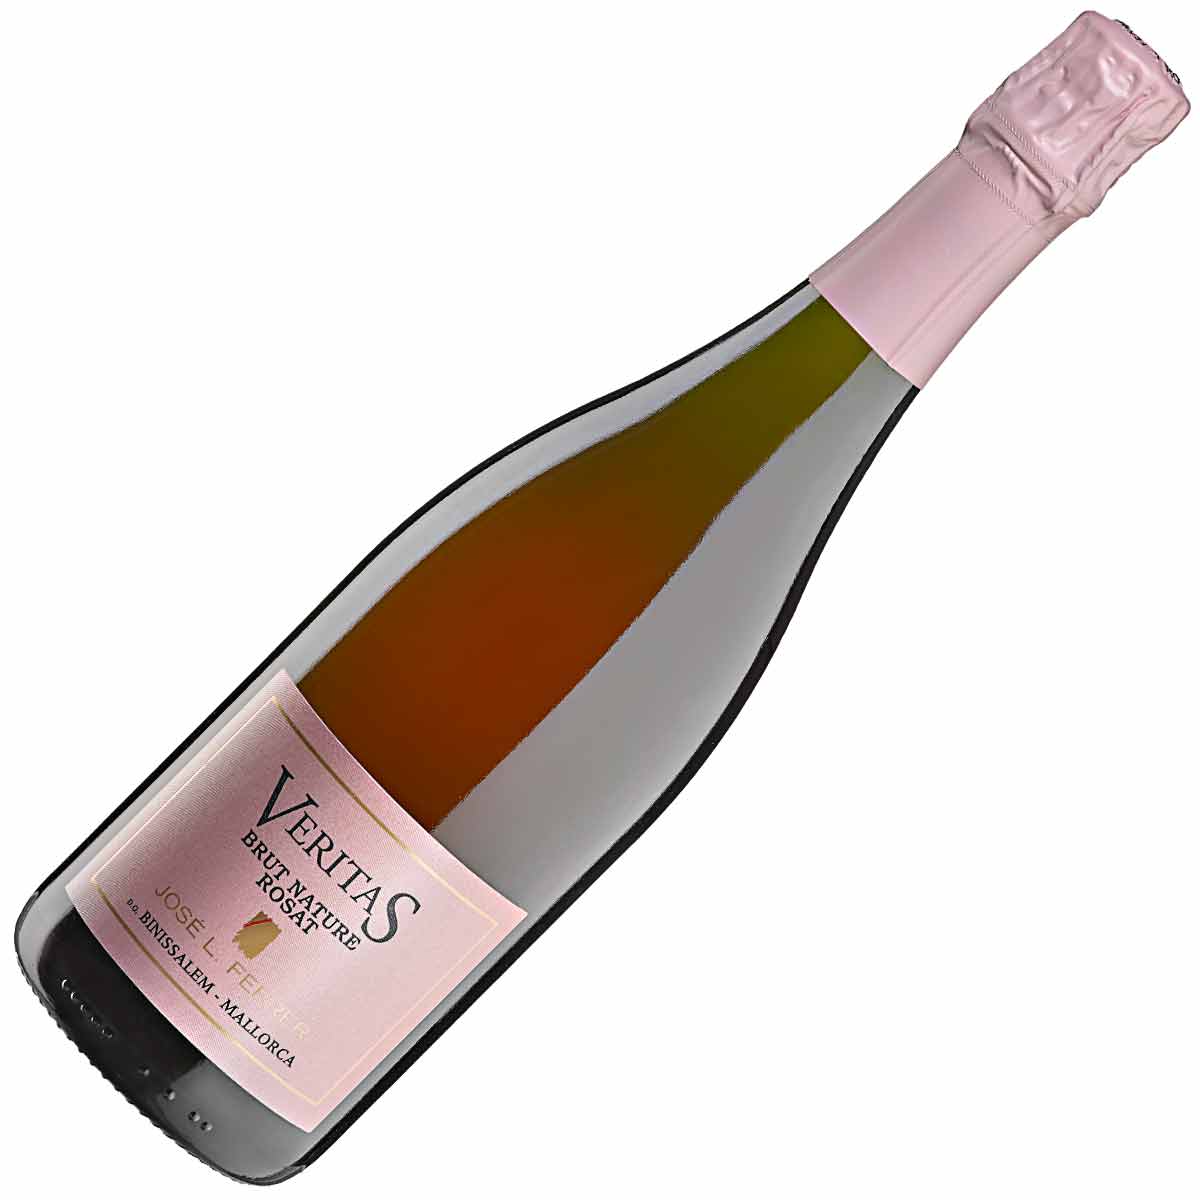 Rosé sparkling wine, Bodegas Ferrer Veritas Brut Nature Rosat D.O. Binissalem